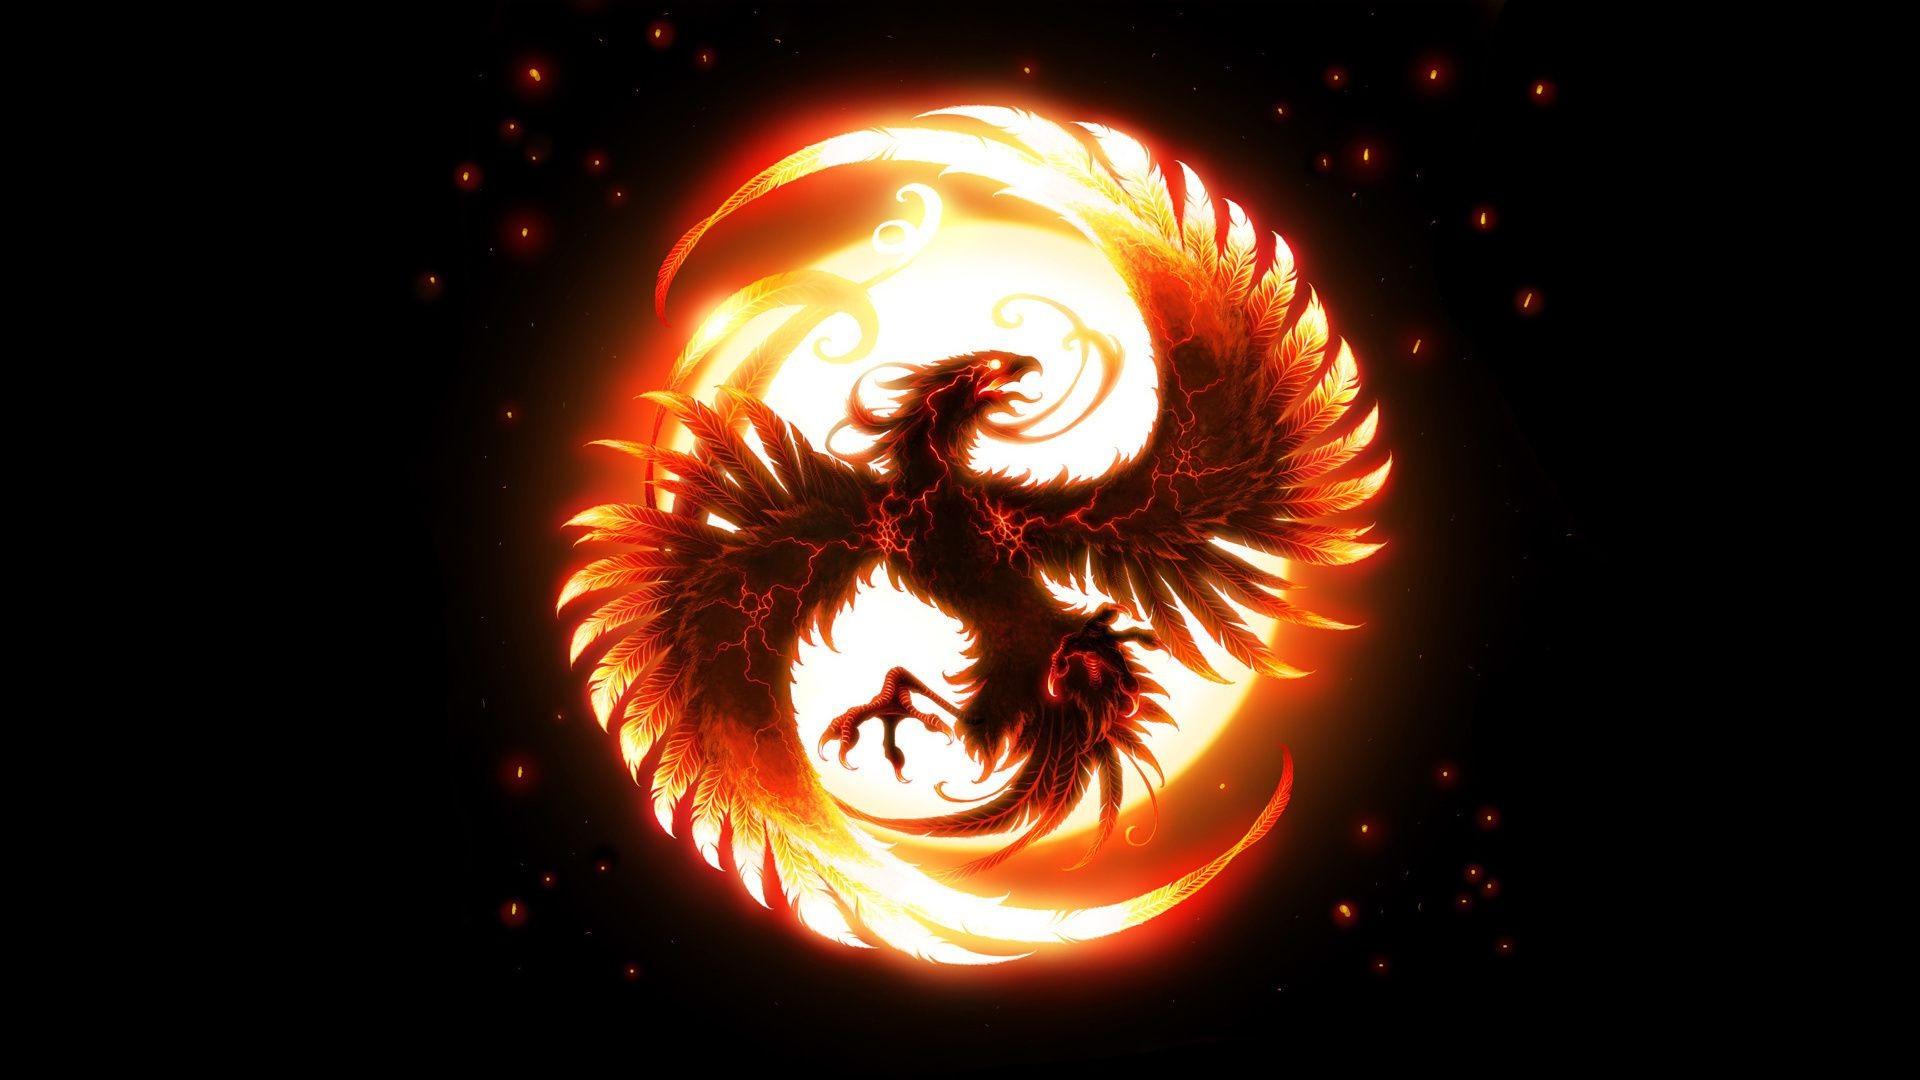 Wings of the Phoenix bird fire